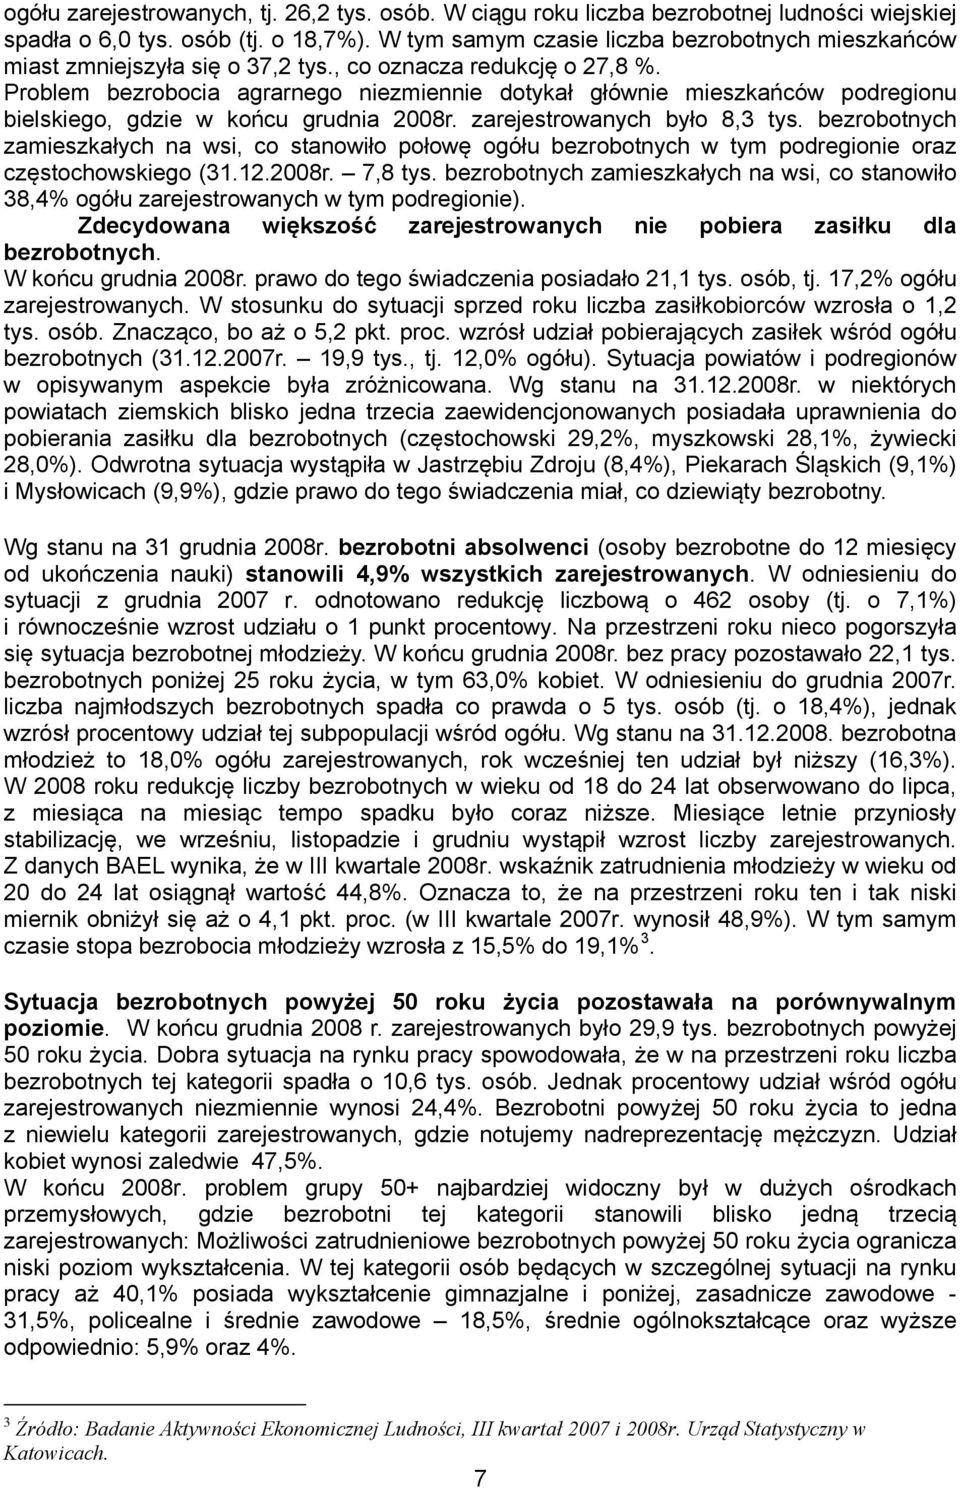 Problem bezrobocia agrarnego niezmiennie dotykał głównie mieszkańców podregionu bielskiego, gdzie w końcu grudnia 2008r. zarejestrowanych było 8,3 tys.